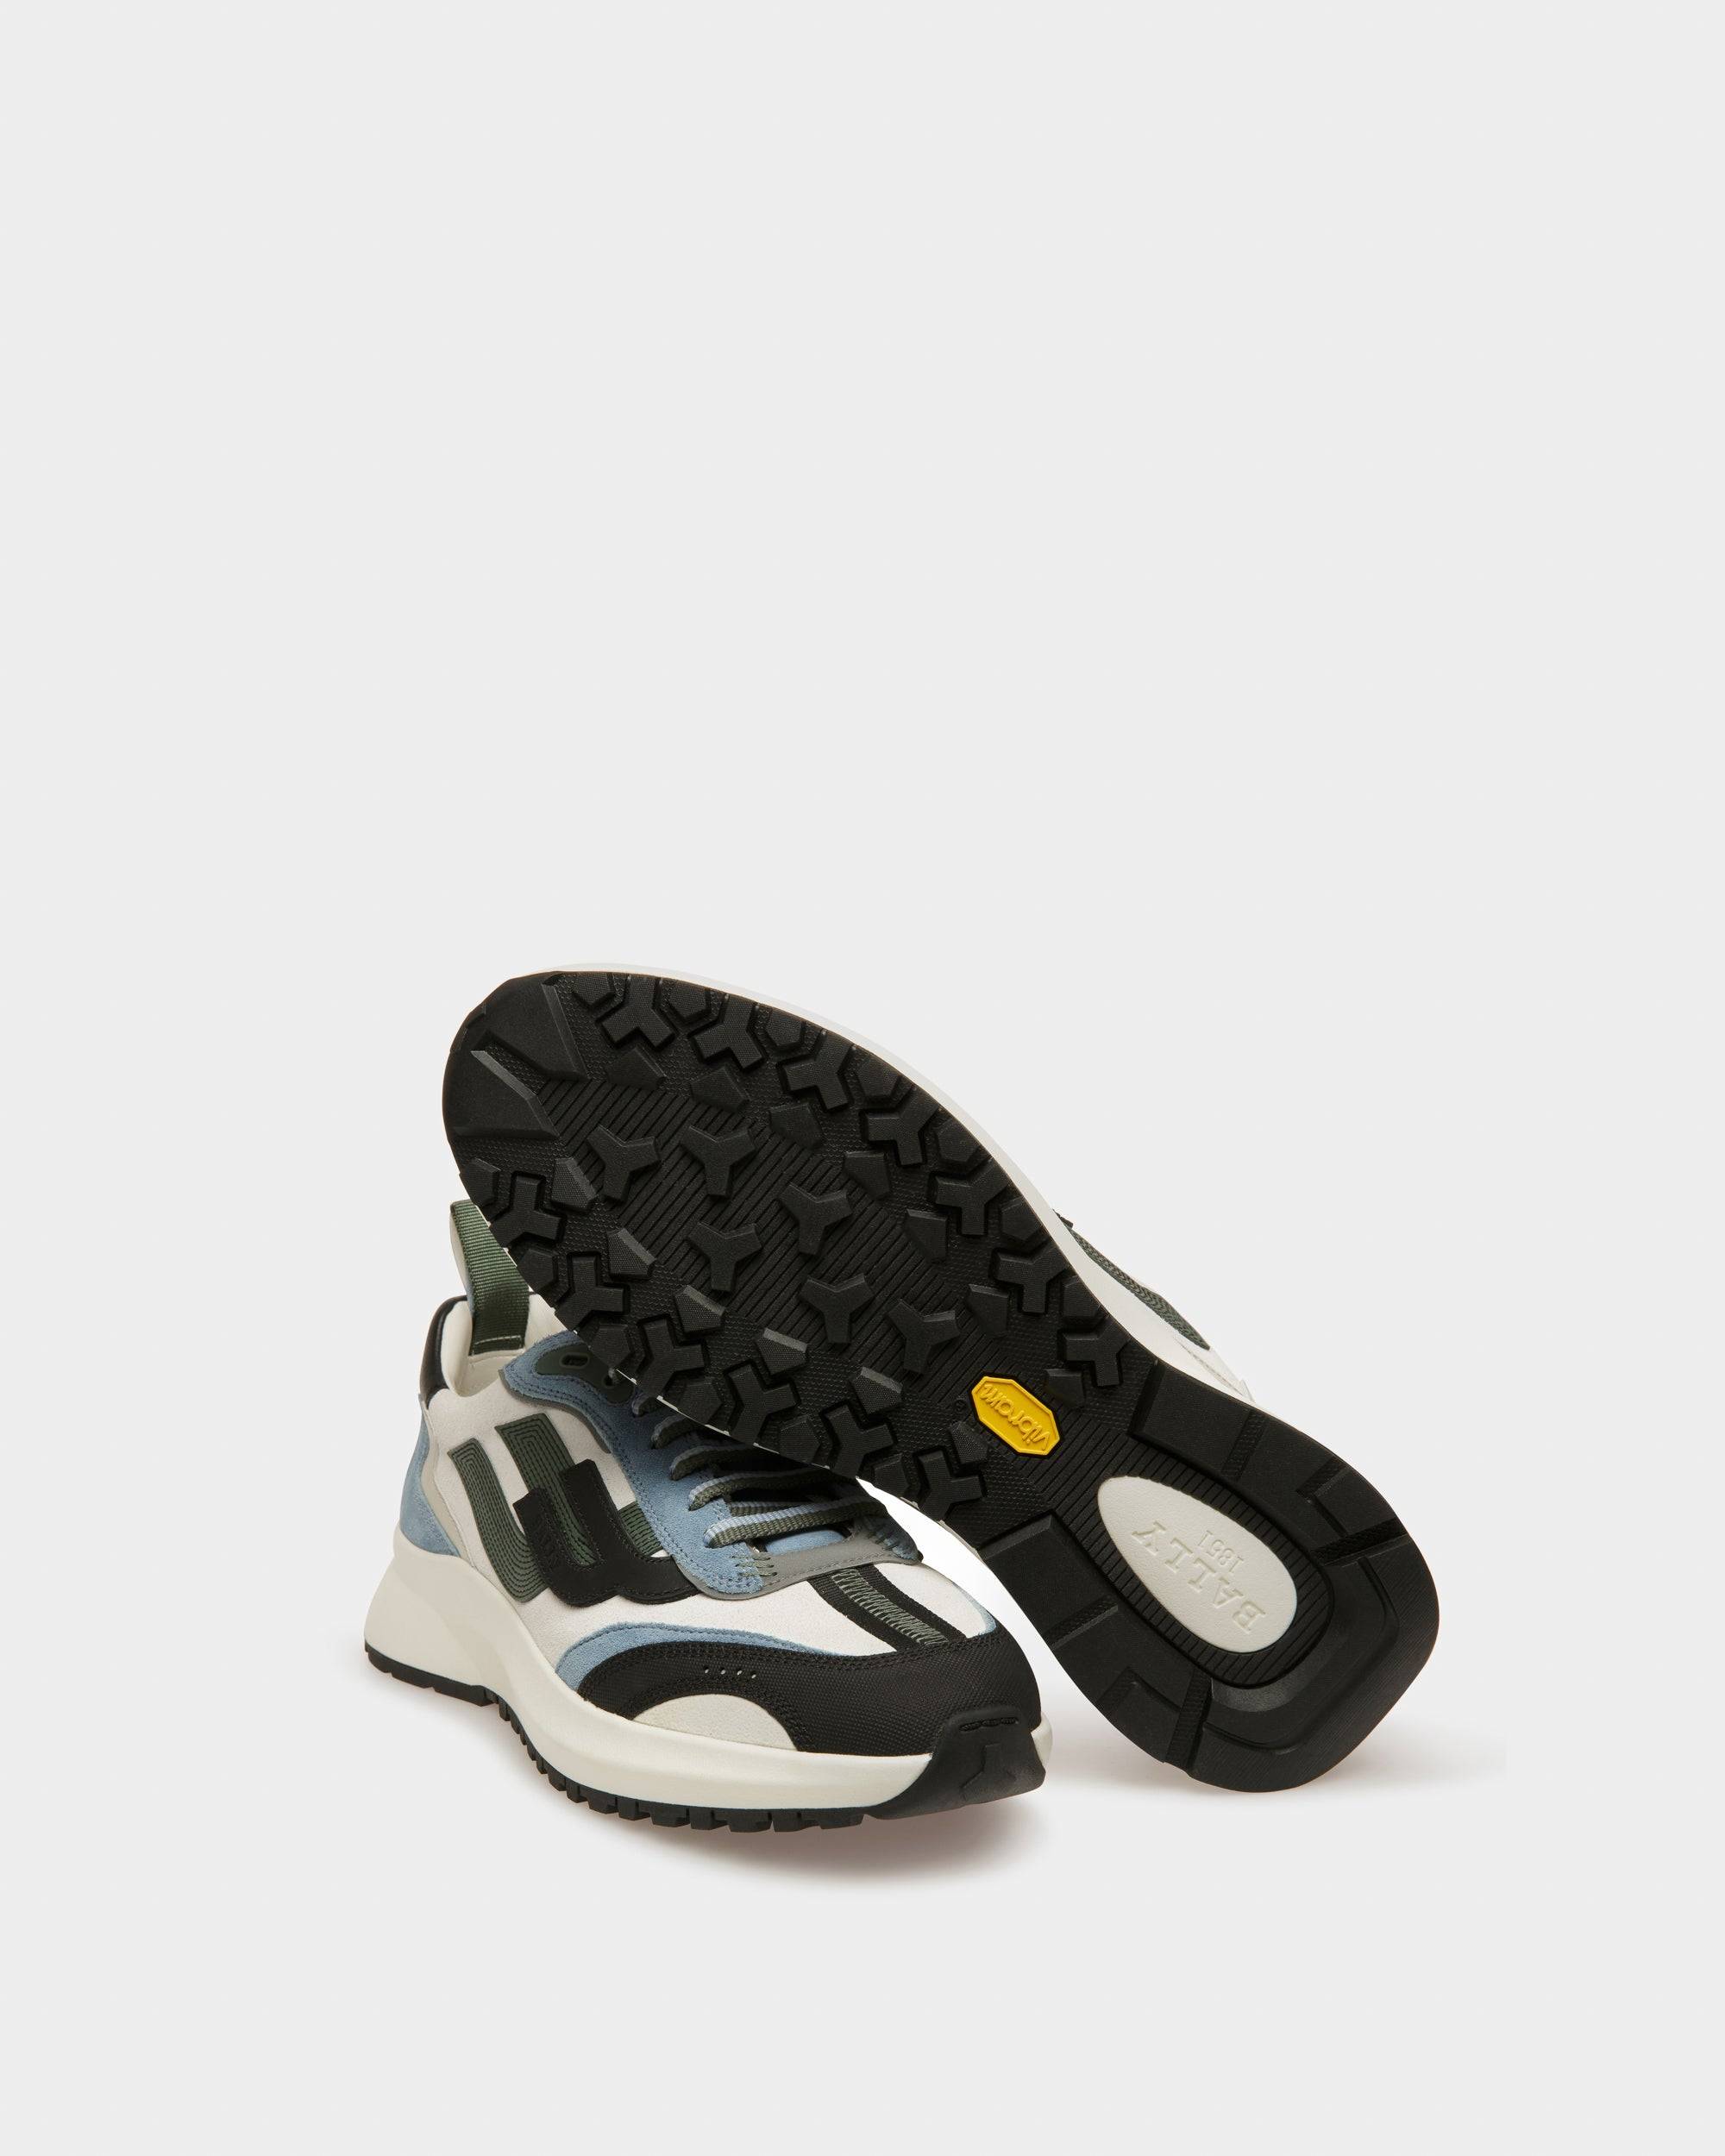 Darky Sneaker In Pelle Nera, Azzurra E Bianco Cipria - Bally - 04